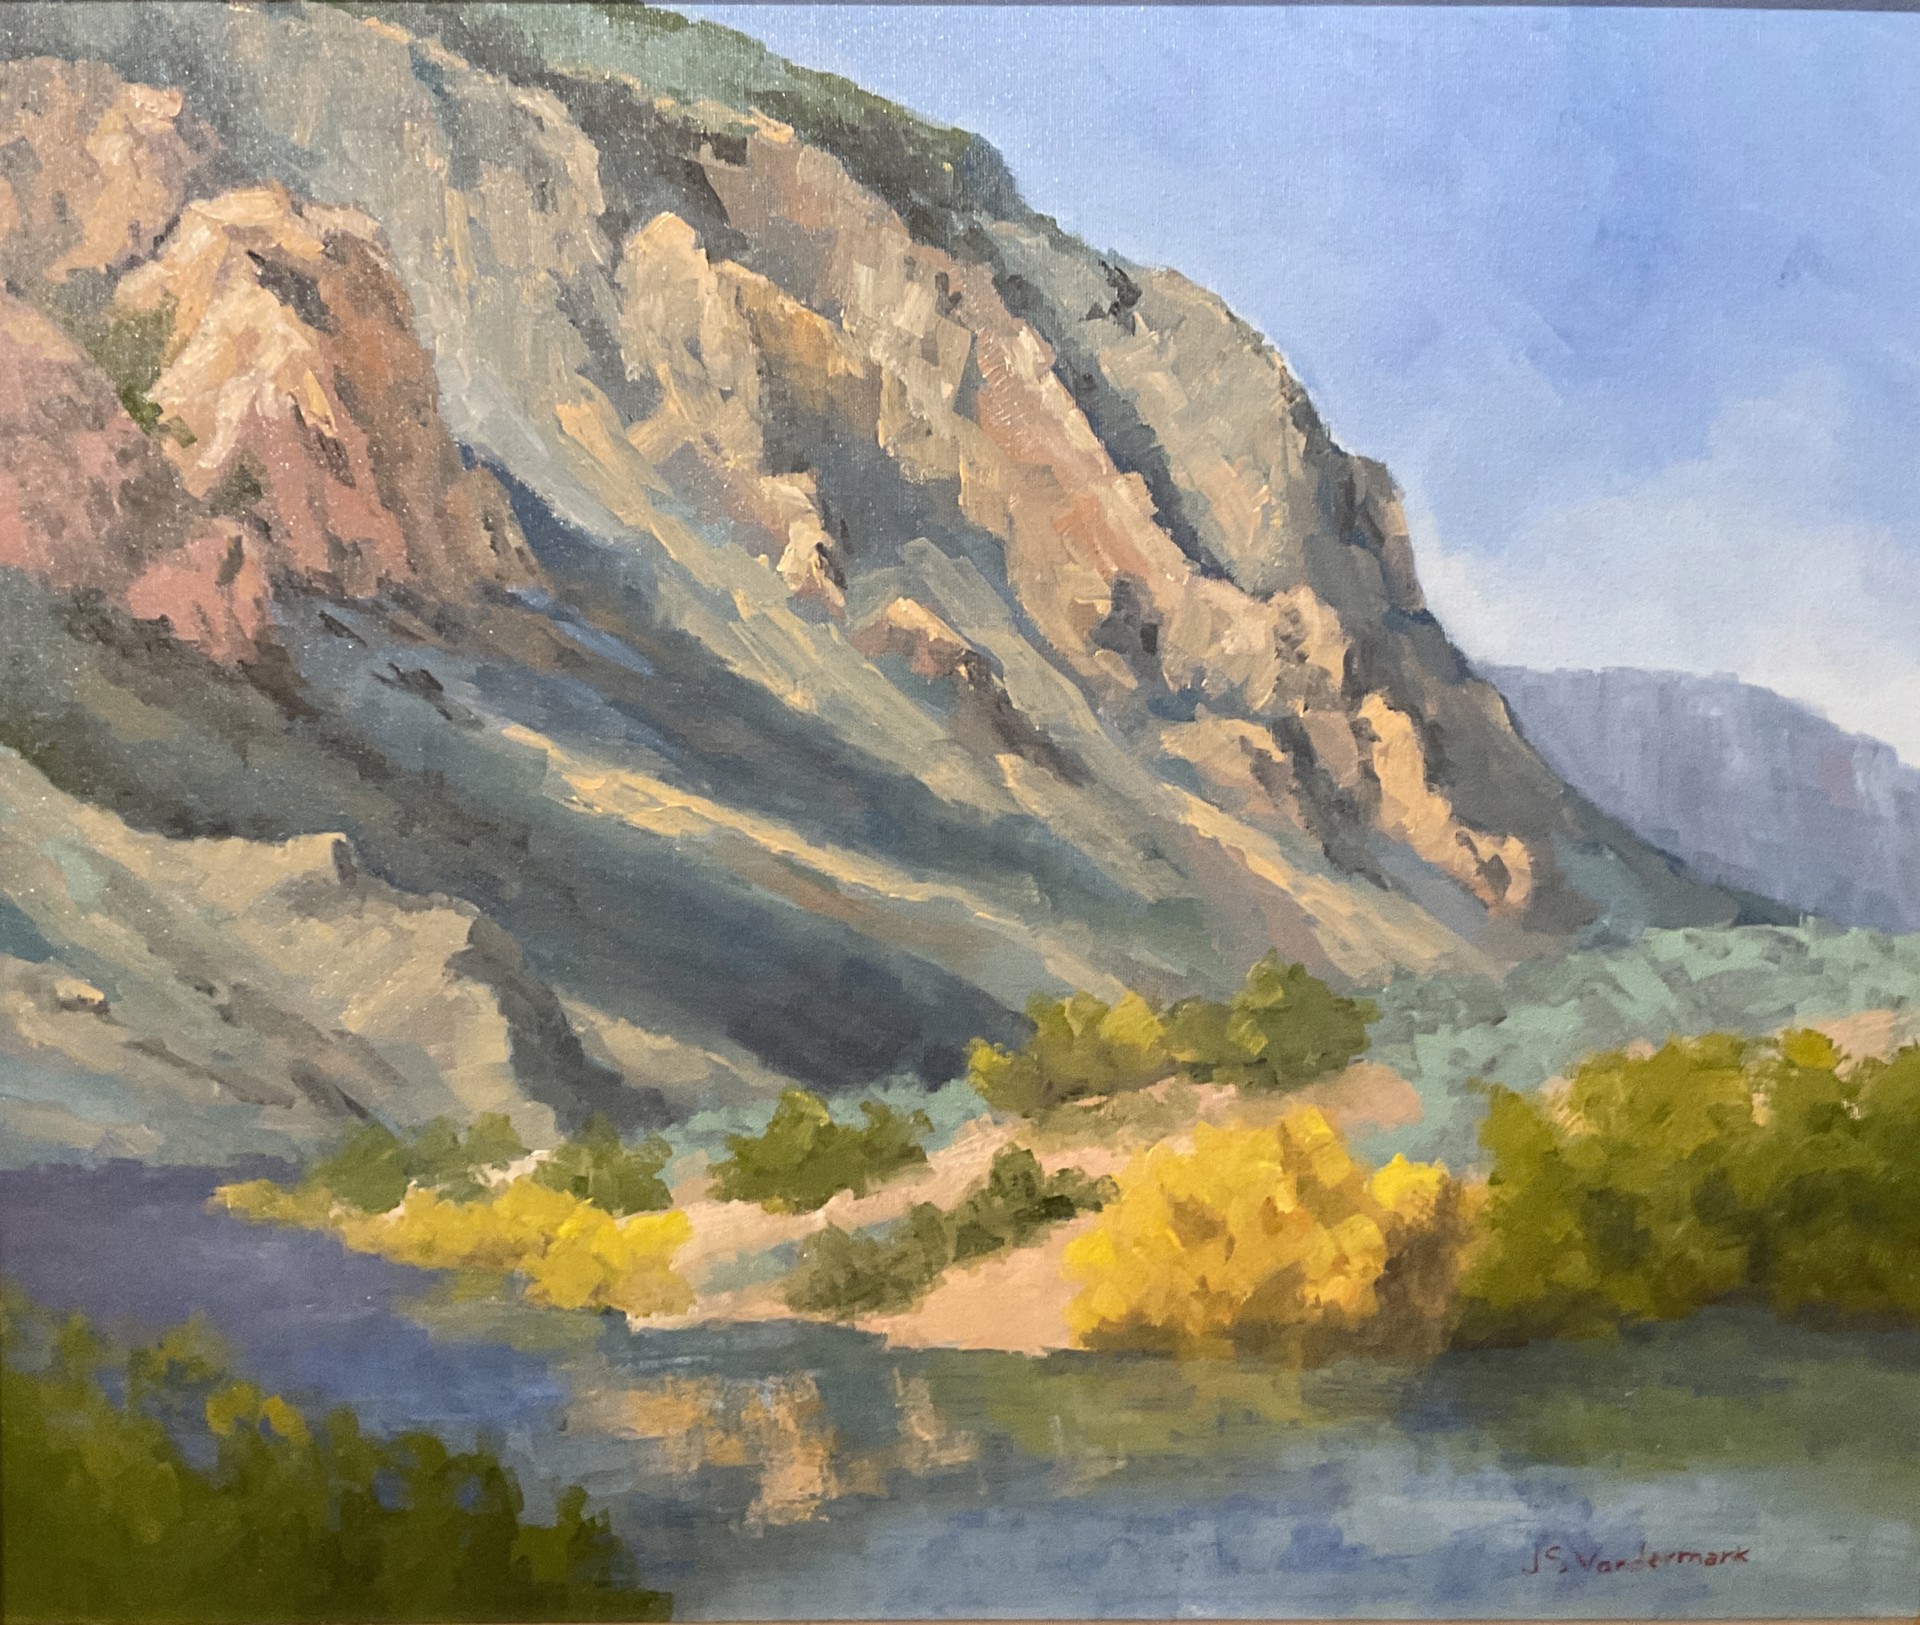 "Rio Grande at Pilar" by Jon Vordermark